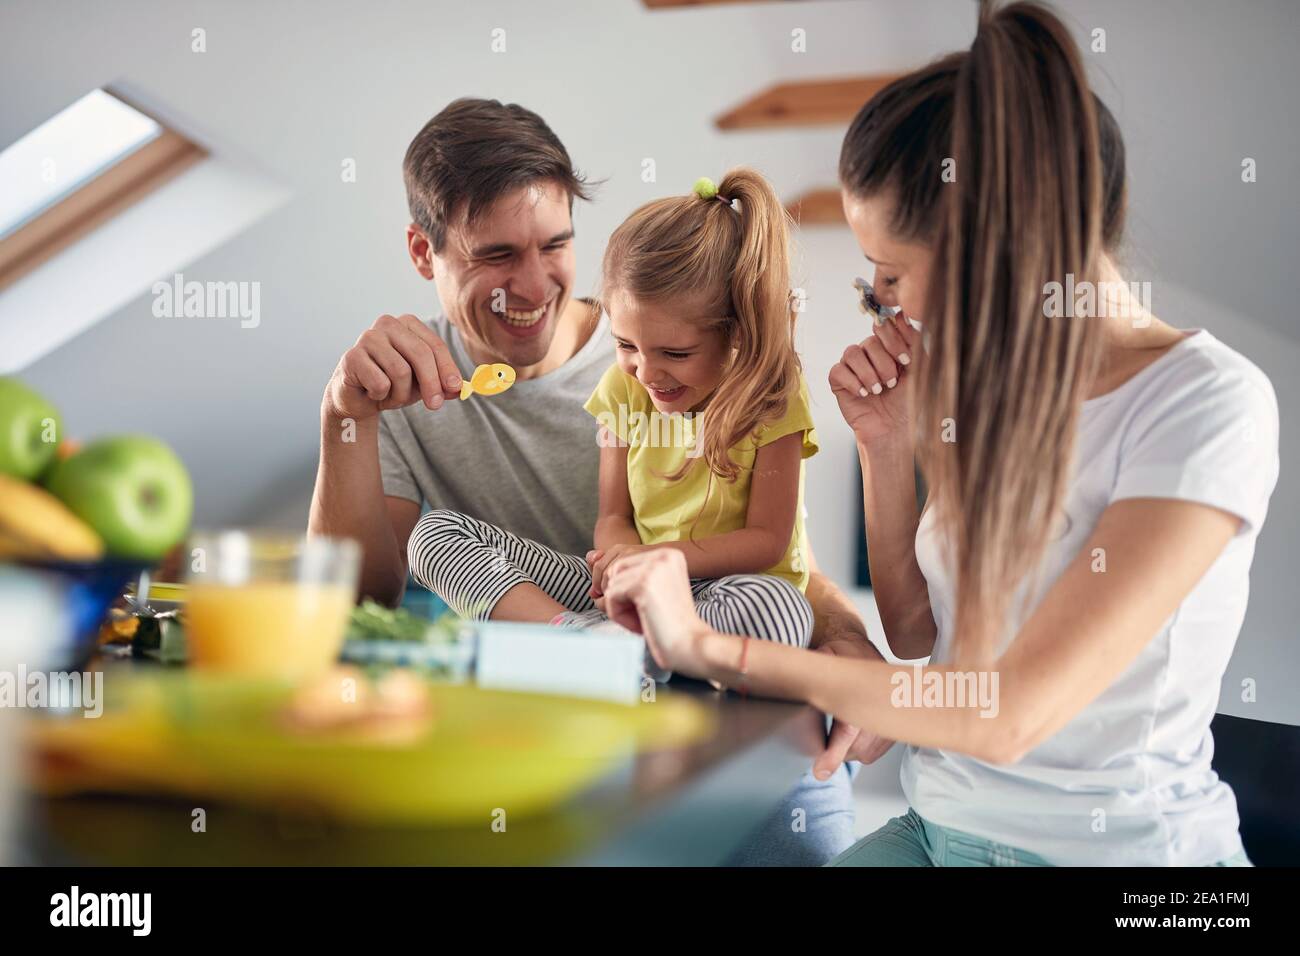 Eine junge glückliche Familie, die sich nach einem Frühstück in einer fröhlichen Atmosphäre zu Hause zusammen gut Vergnügen kann. Familie, Frühstück, zusammen, Zuhause Stockfoto